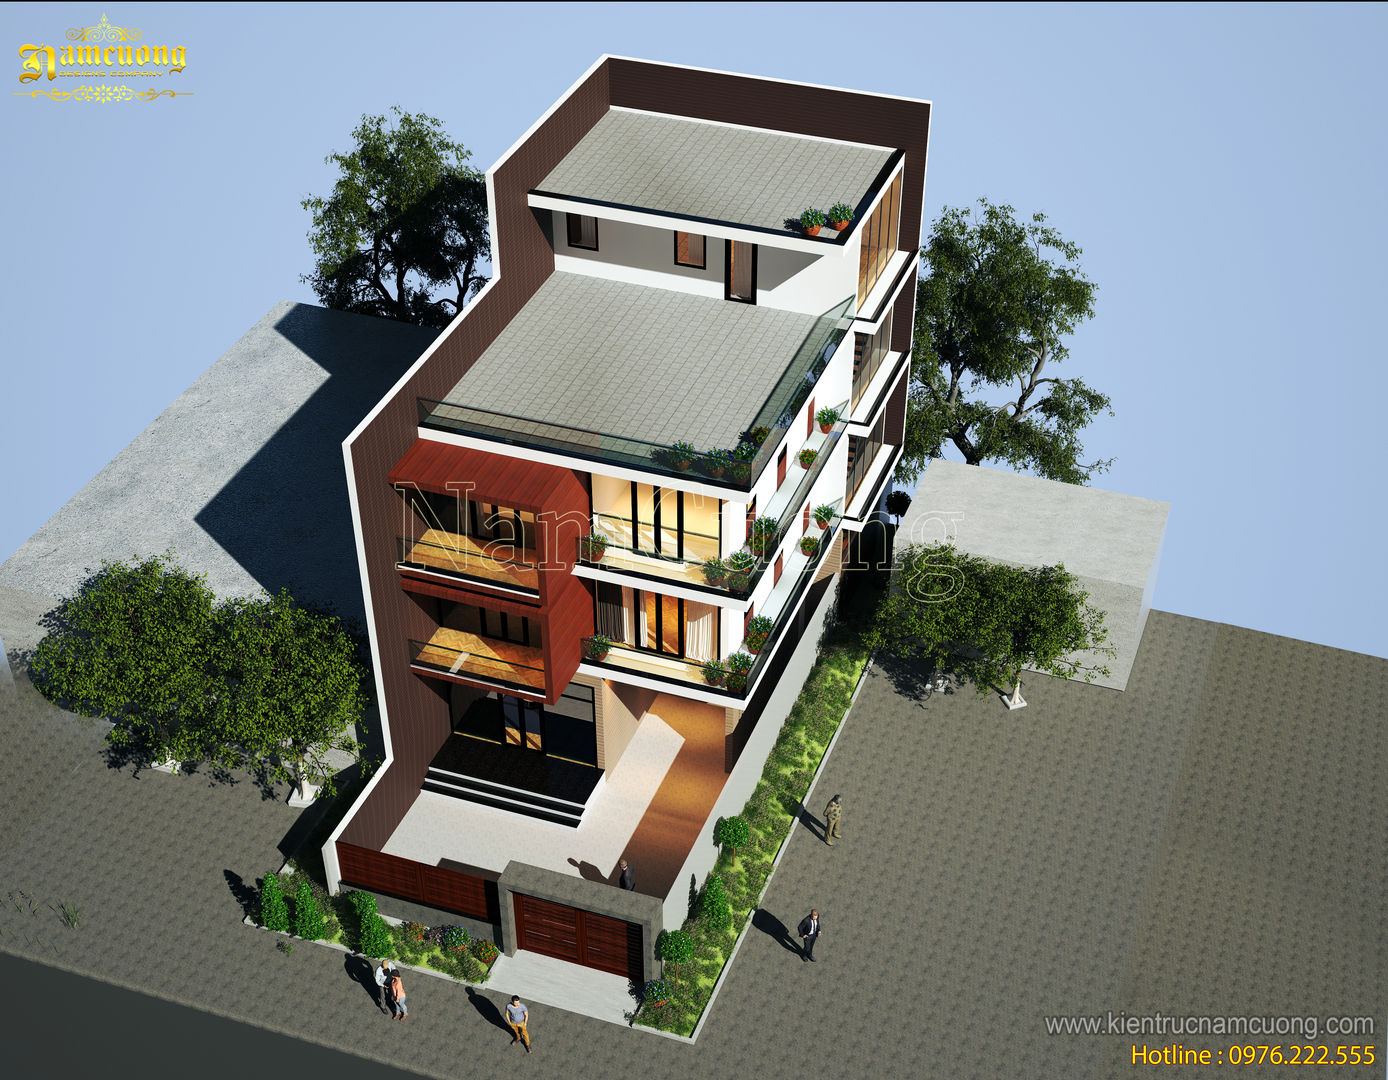 NamCuong design company, Công ty Cổ phần tư vấn thiết kế xây dựng Nam Cường Công ty Cổ phần tư vấn thiết kế xây dựng Nam Cường Дома в стиле модерн